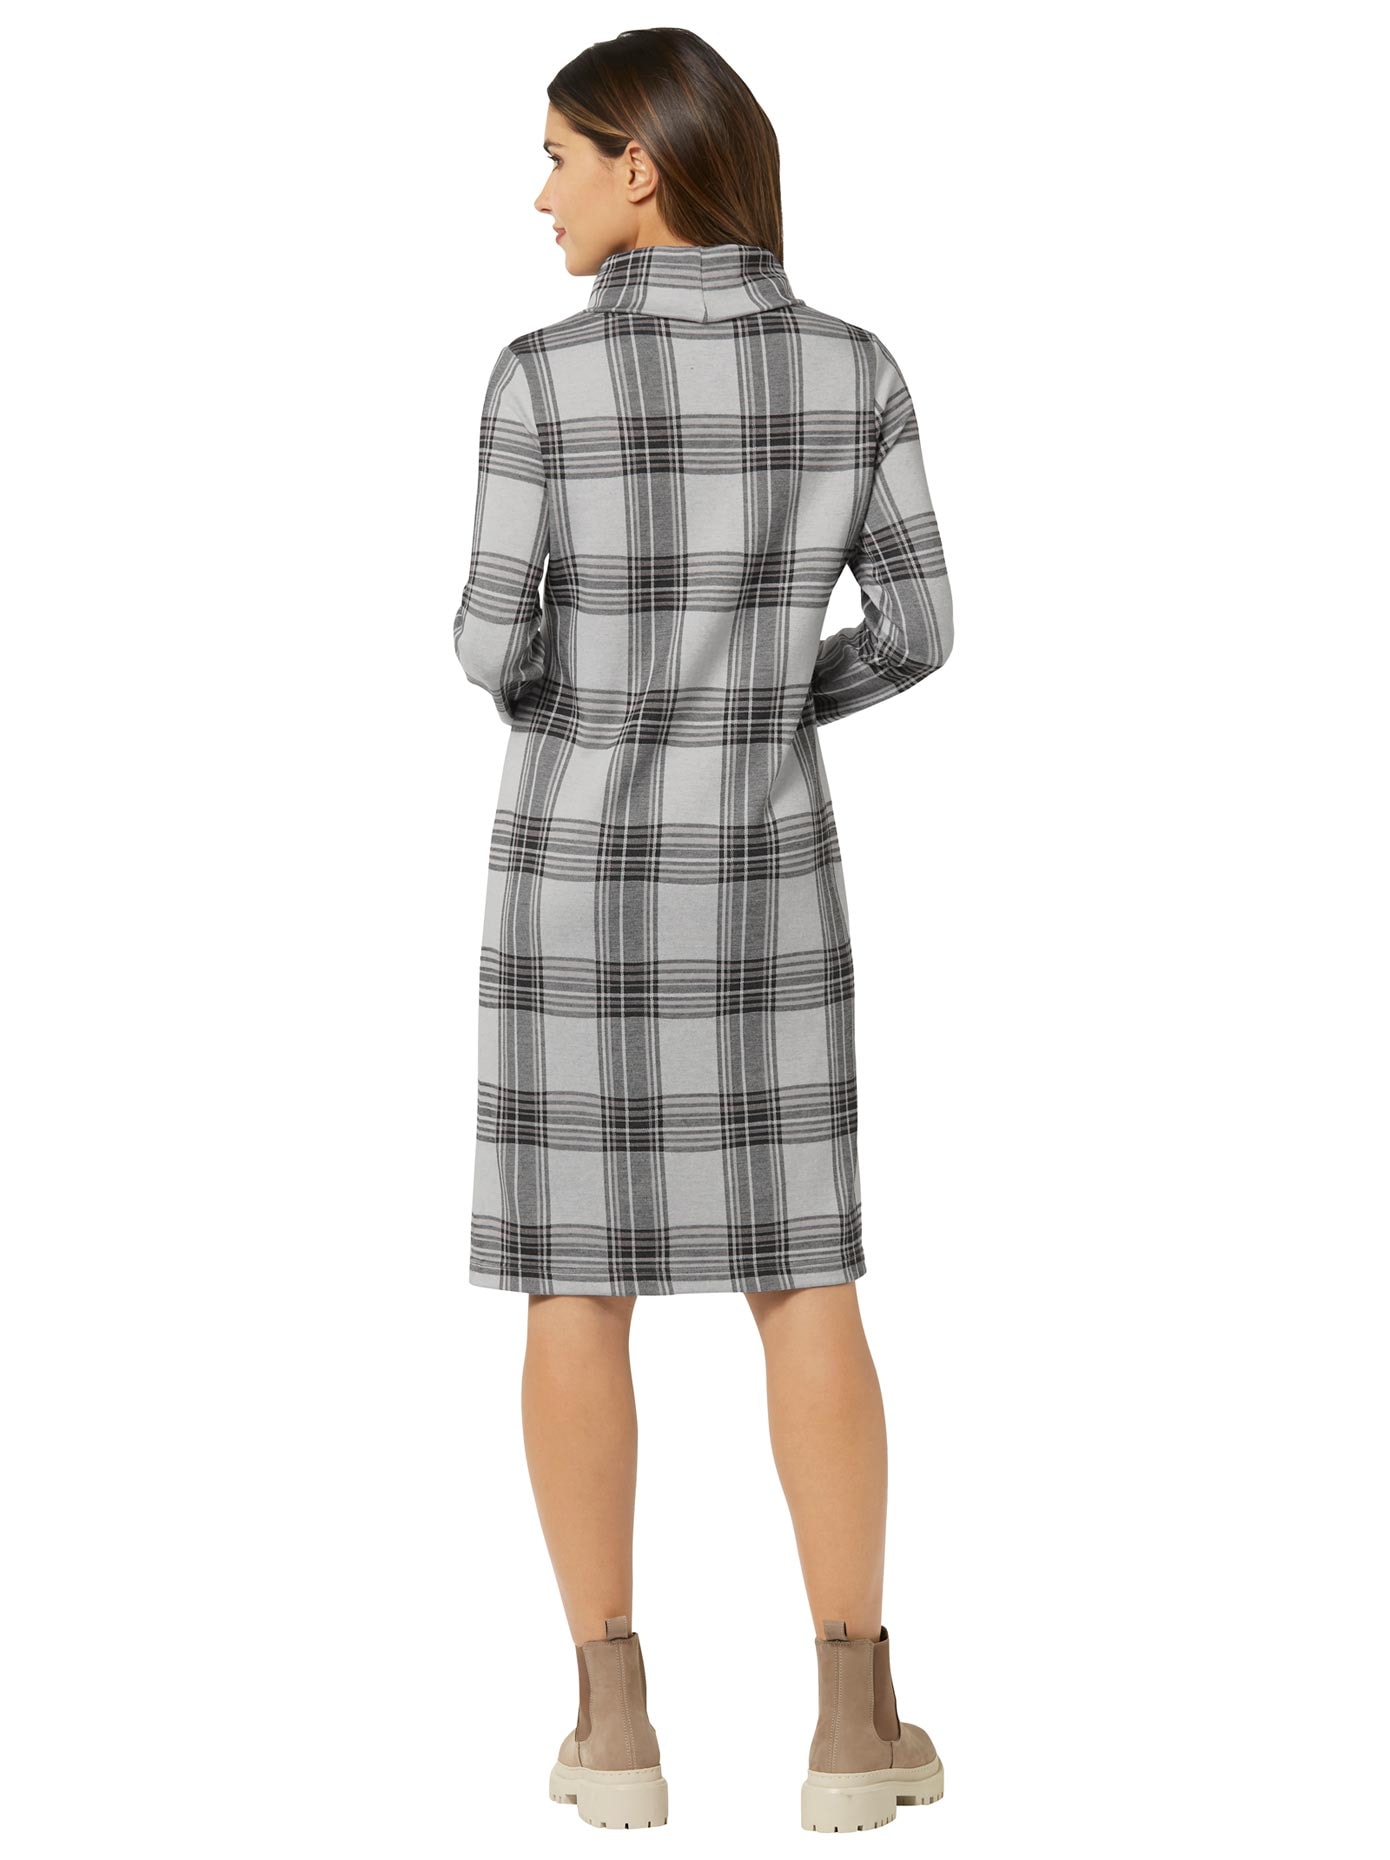 Inspirationen Jerseykleid »Jersey-Kleid« kaufen bei OTTO | Jerseykleider